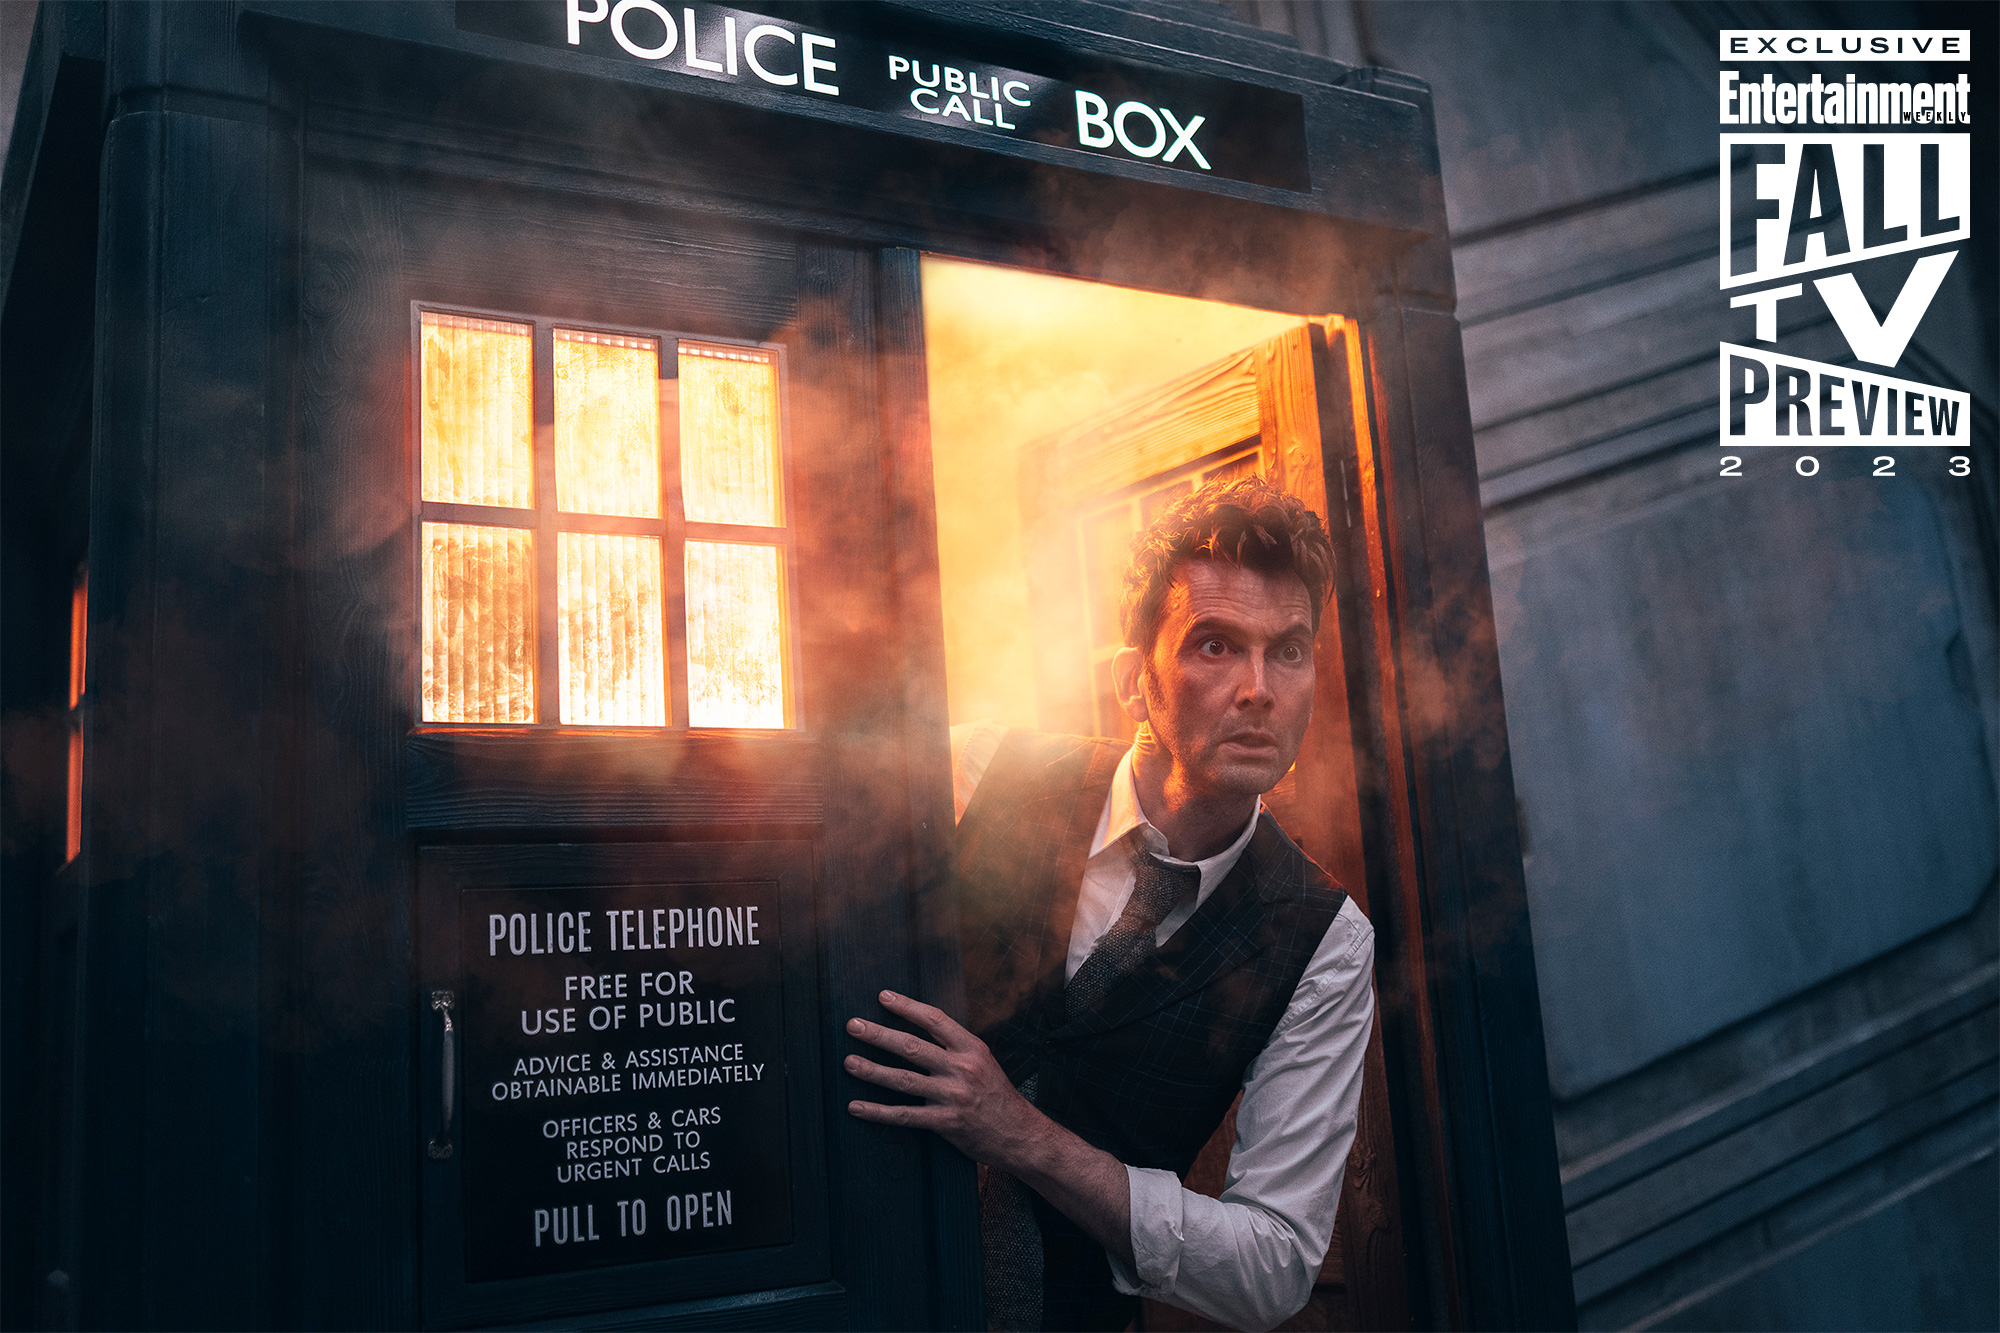 James Pardon/Doctor Who